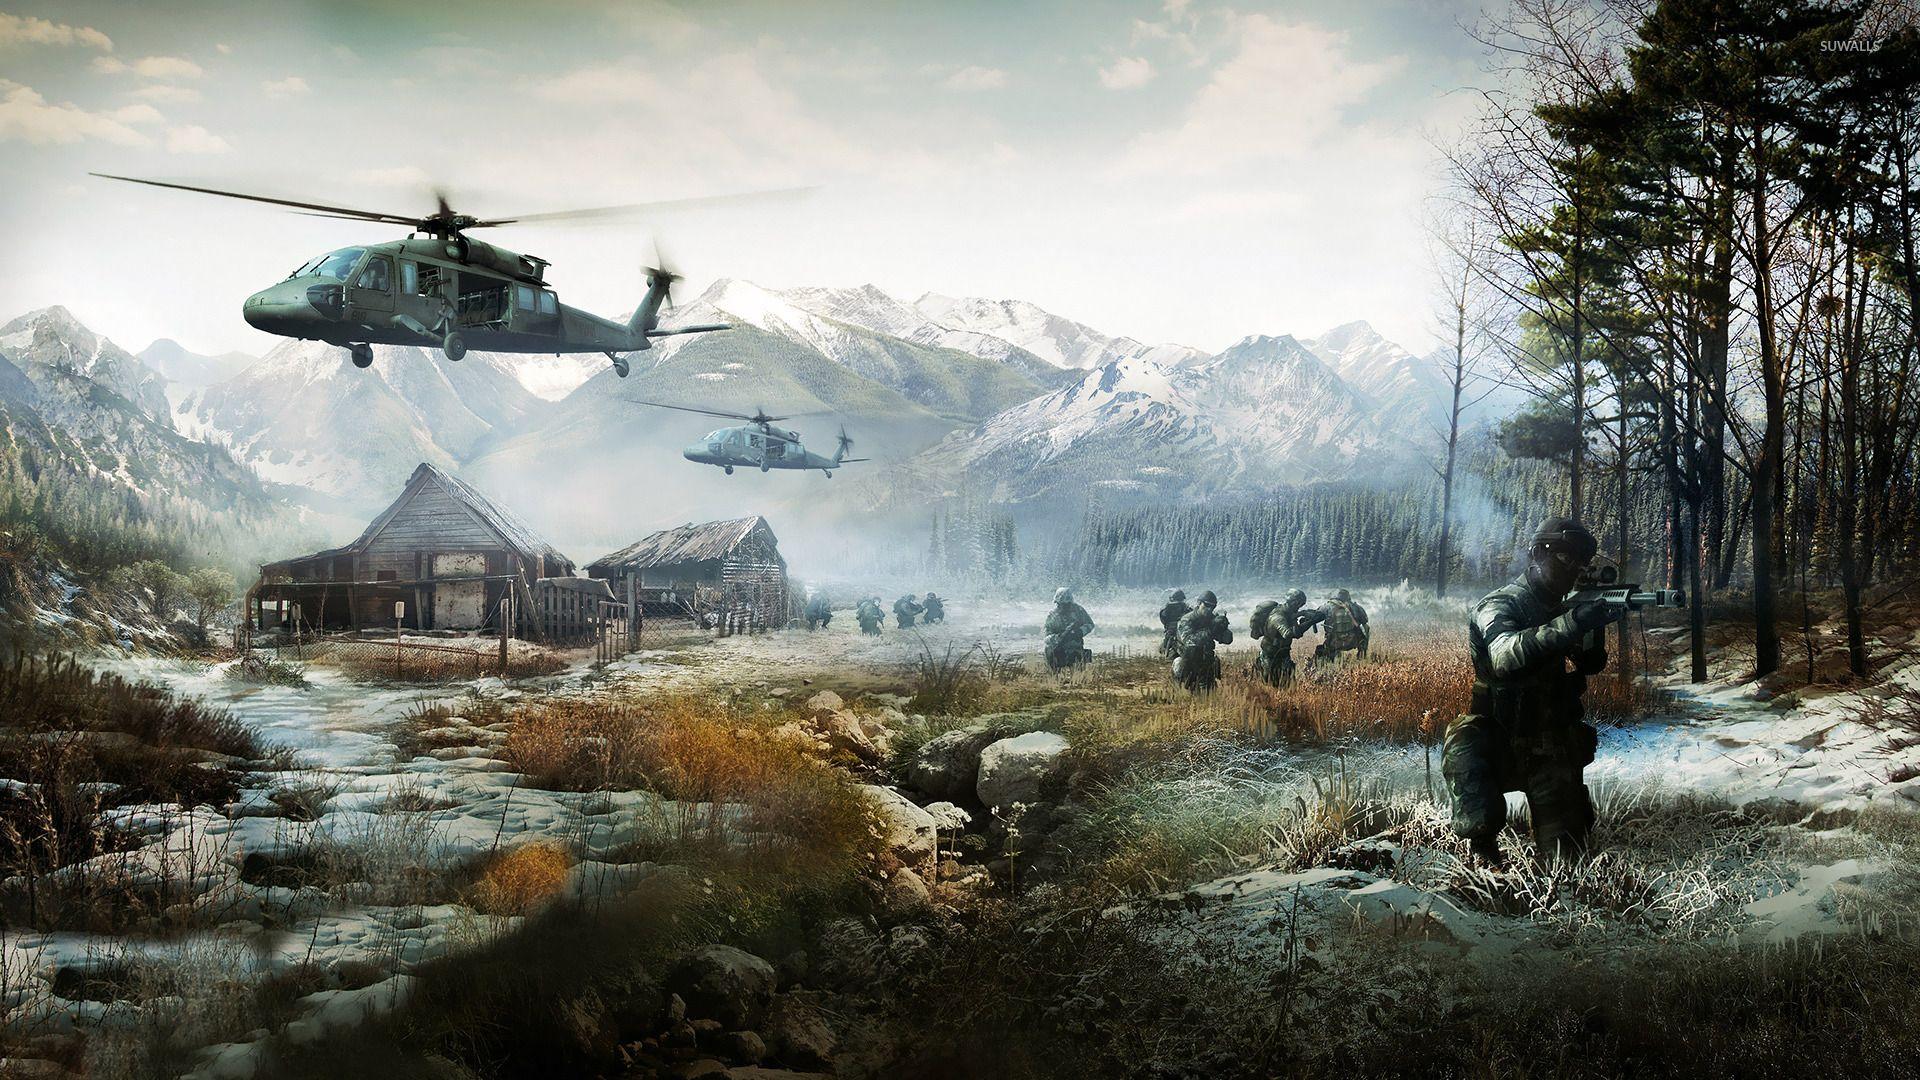 Battlefield Wallpapers, Desktop 4K 100% Quality HD Photos, Fungyung.